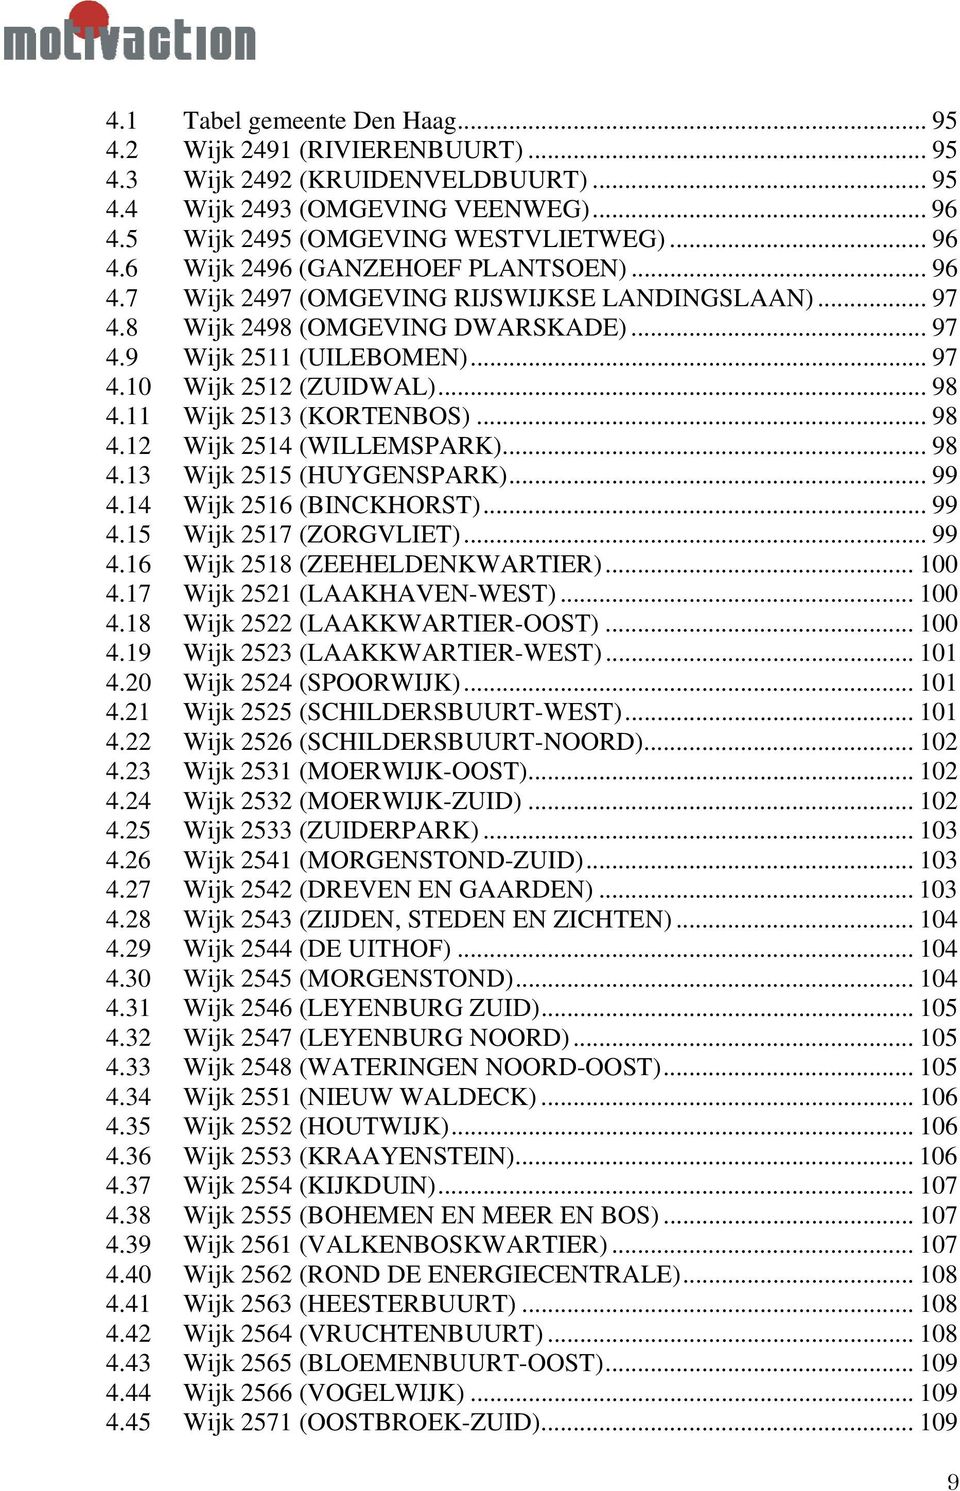 .. 98 4.13 Wijk 2515 (HUYGENSPARK)... 99 4.14 Wijk 2516 (BINCKHORST)... 99 4.15 Wijk 2517 (ZORGVLIET)... 99 4.16 Wijk 2518 (ZEEHELDENKWARTIER)... 100 4.17 Wijk 2521 (LAAKHAVEN-WEST)... 100 4.18 Wijk 2522 (LAAKKWARTIER-OOST).